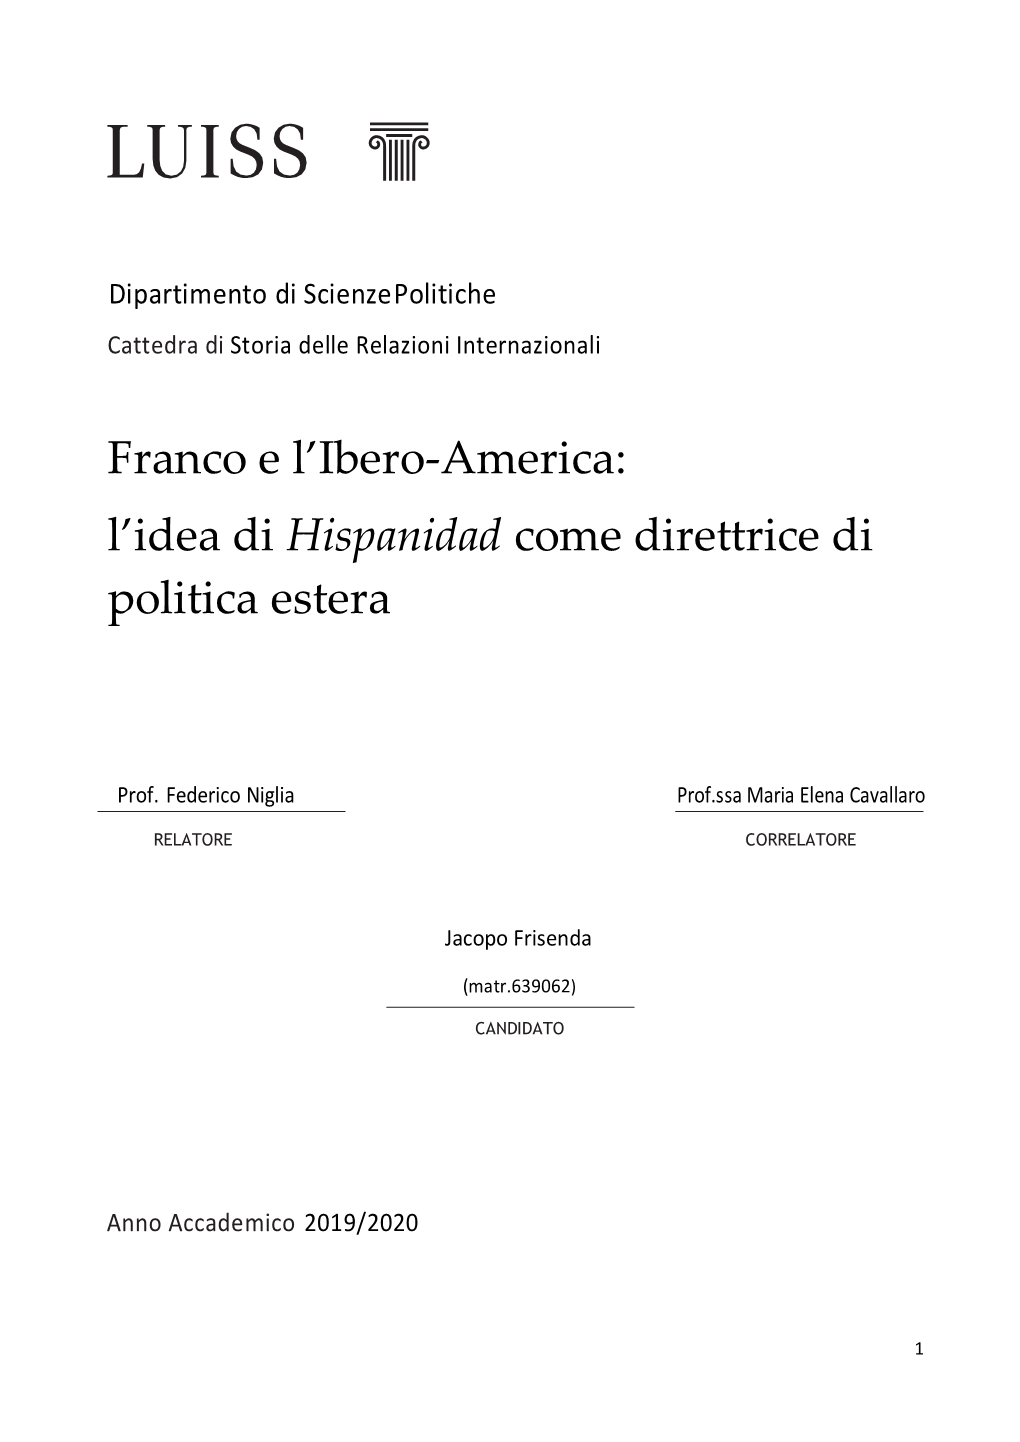 Franco E L'ibero-America: L'idea Di Hispanidad Come Direttrice Di